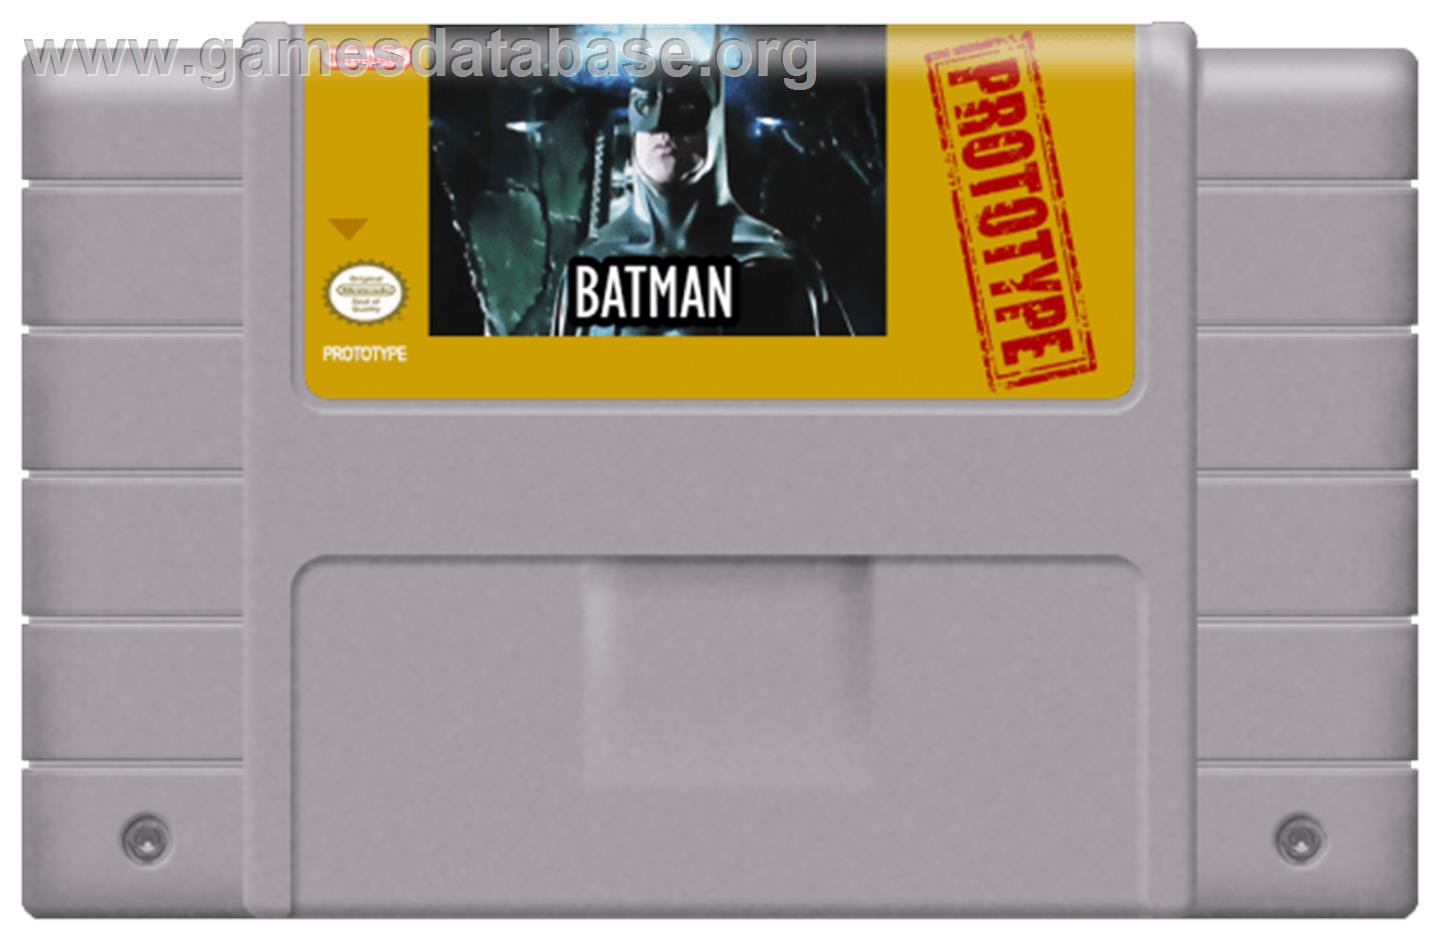 Batman: Revenge of the Joker - Nintendo SNES - Artwork - Cartridge